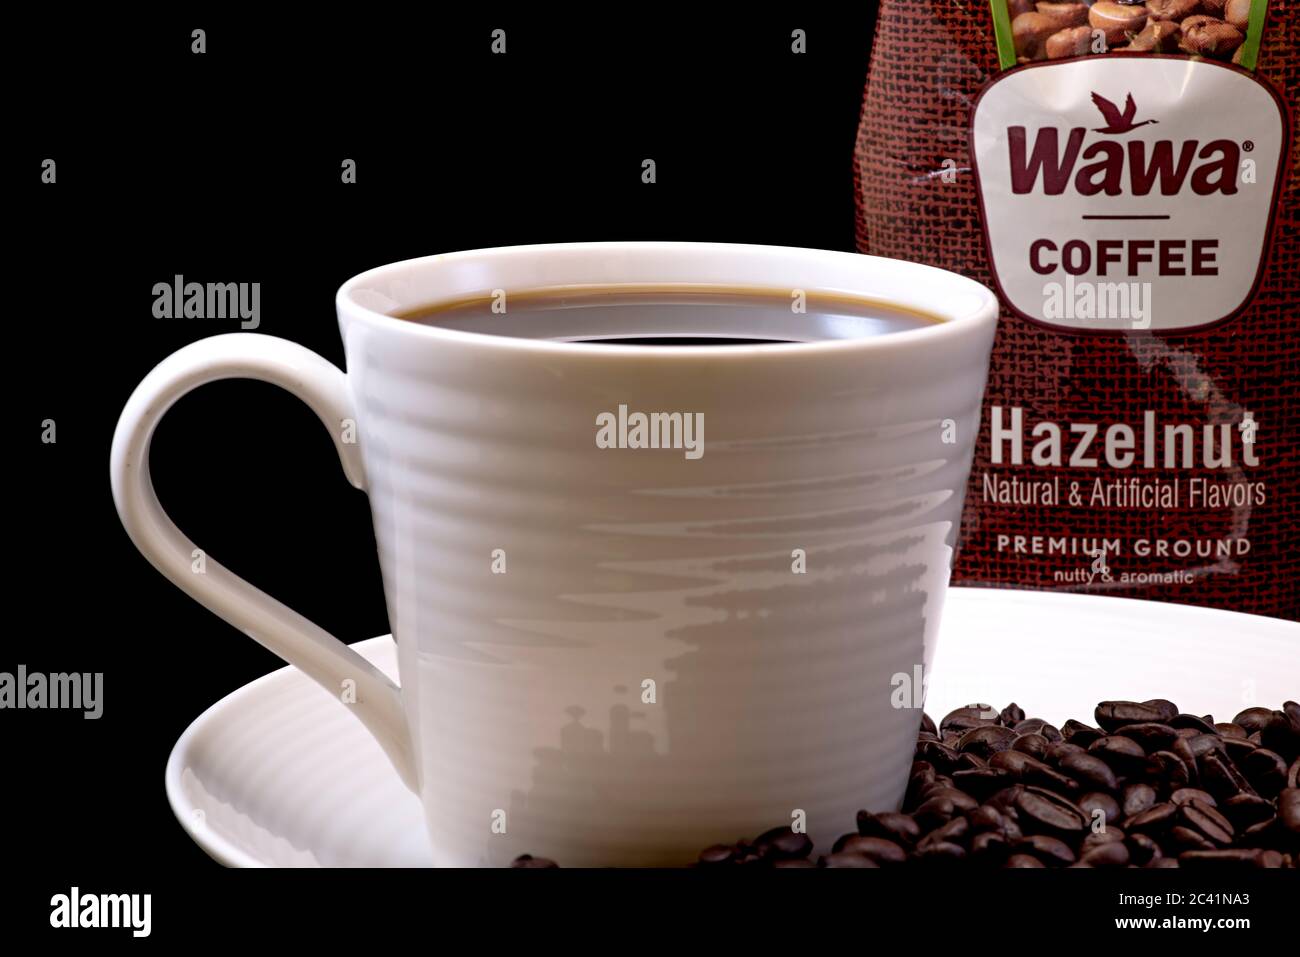 Wawa Haselnuss-Kaffeetasche Nahaufnahme mit einer gebrauten Tasse Wawa-Kaffee, weißer Tasse auf einem weißen Teller, Kaffeebohnen und einem schwarzen Hintergrund für Ausschnitte Stockfoto